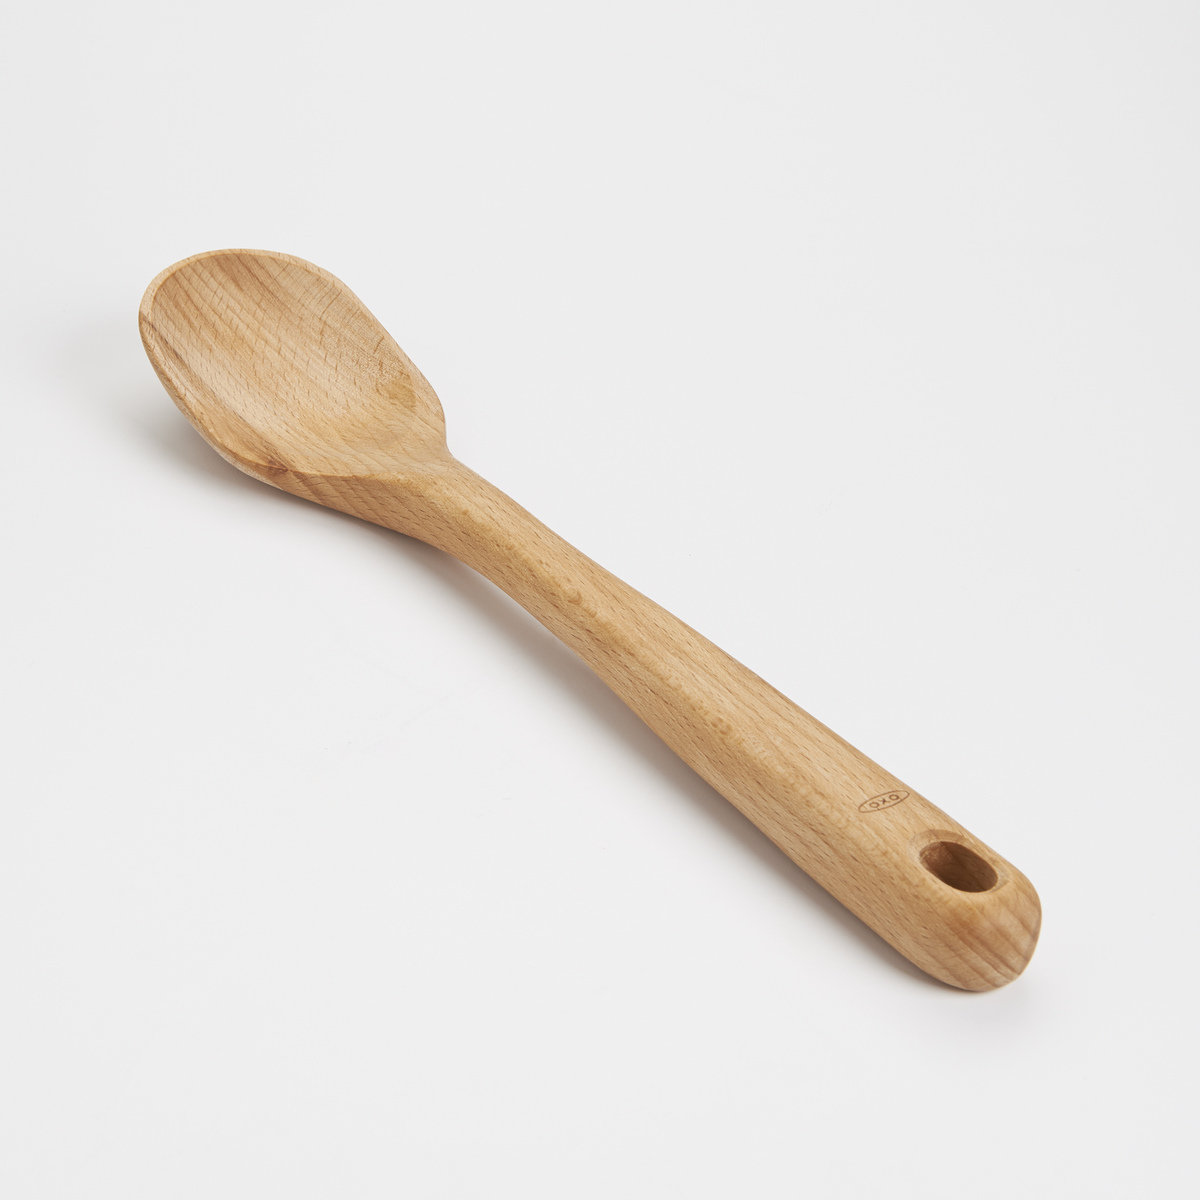 https://assets.wfcdn.com/im/51864881/compr-r85/1456/14566788/oxo-good-grips-wooden-spoon.jpg